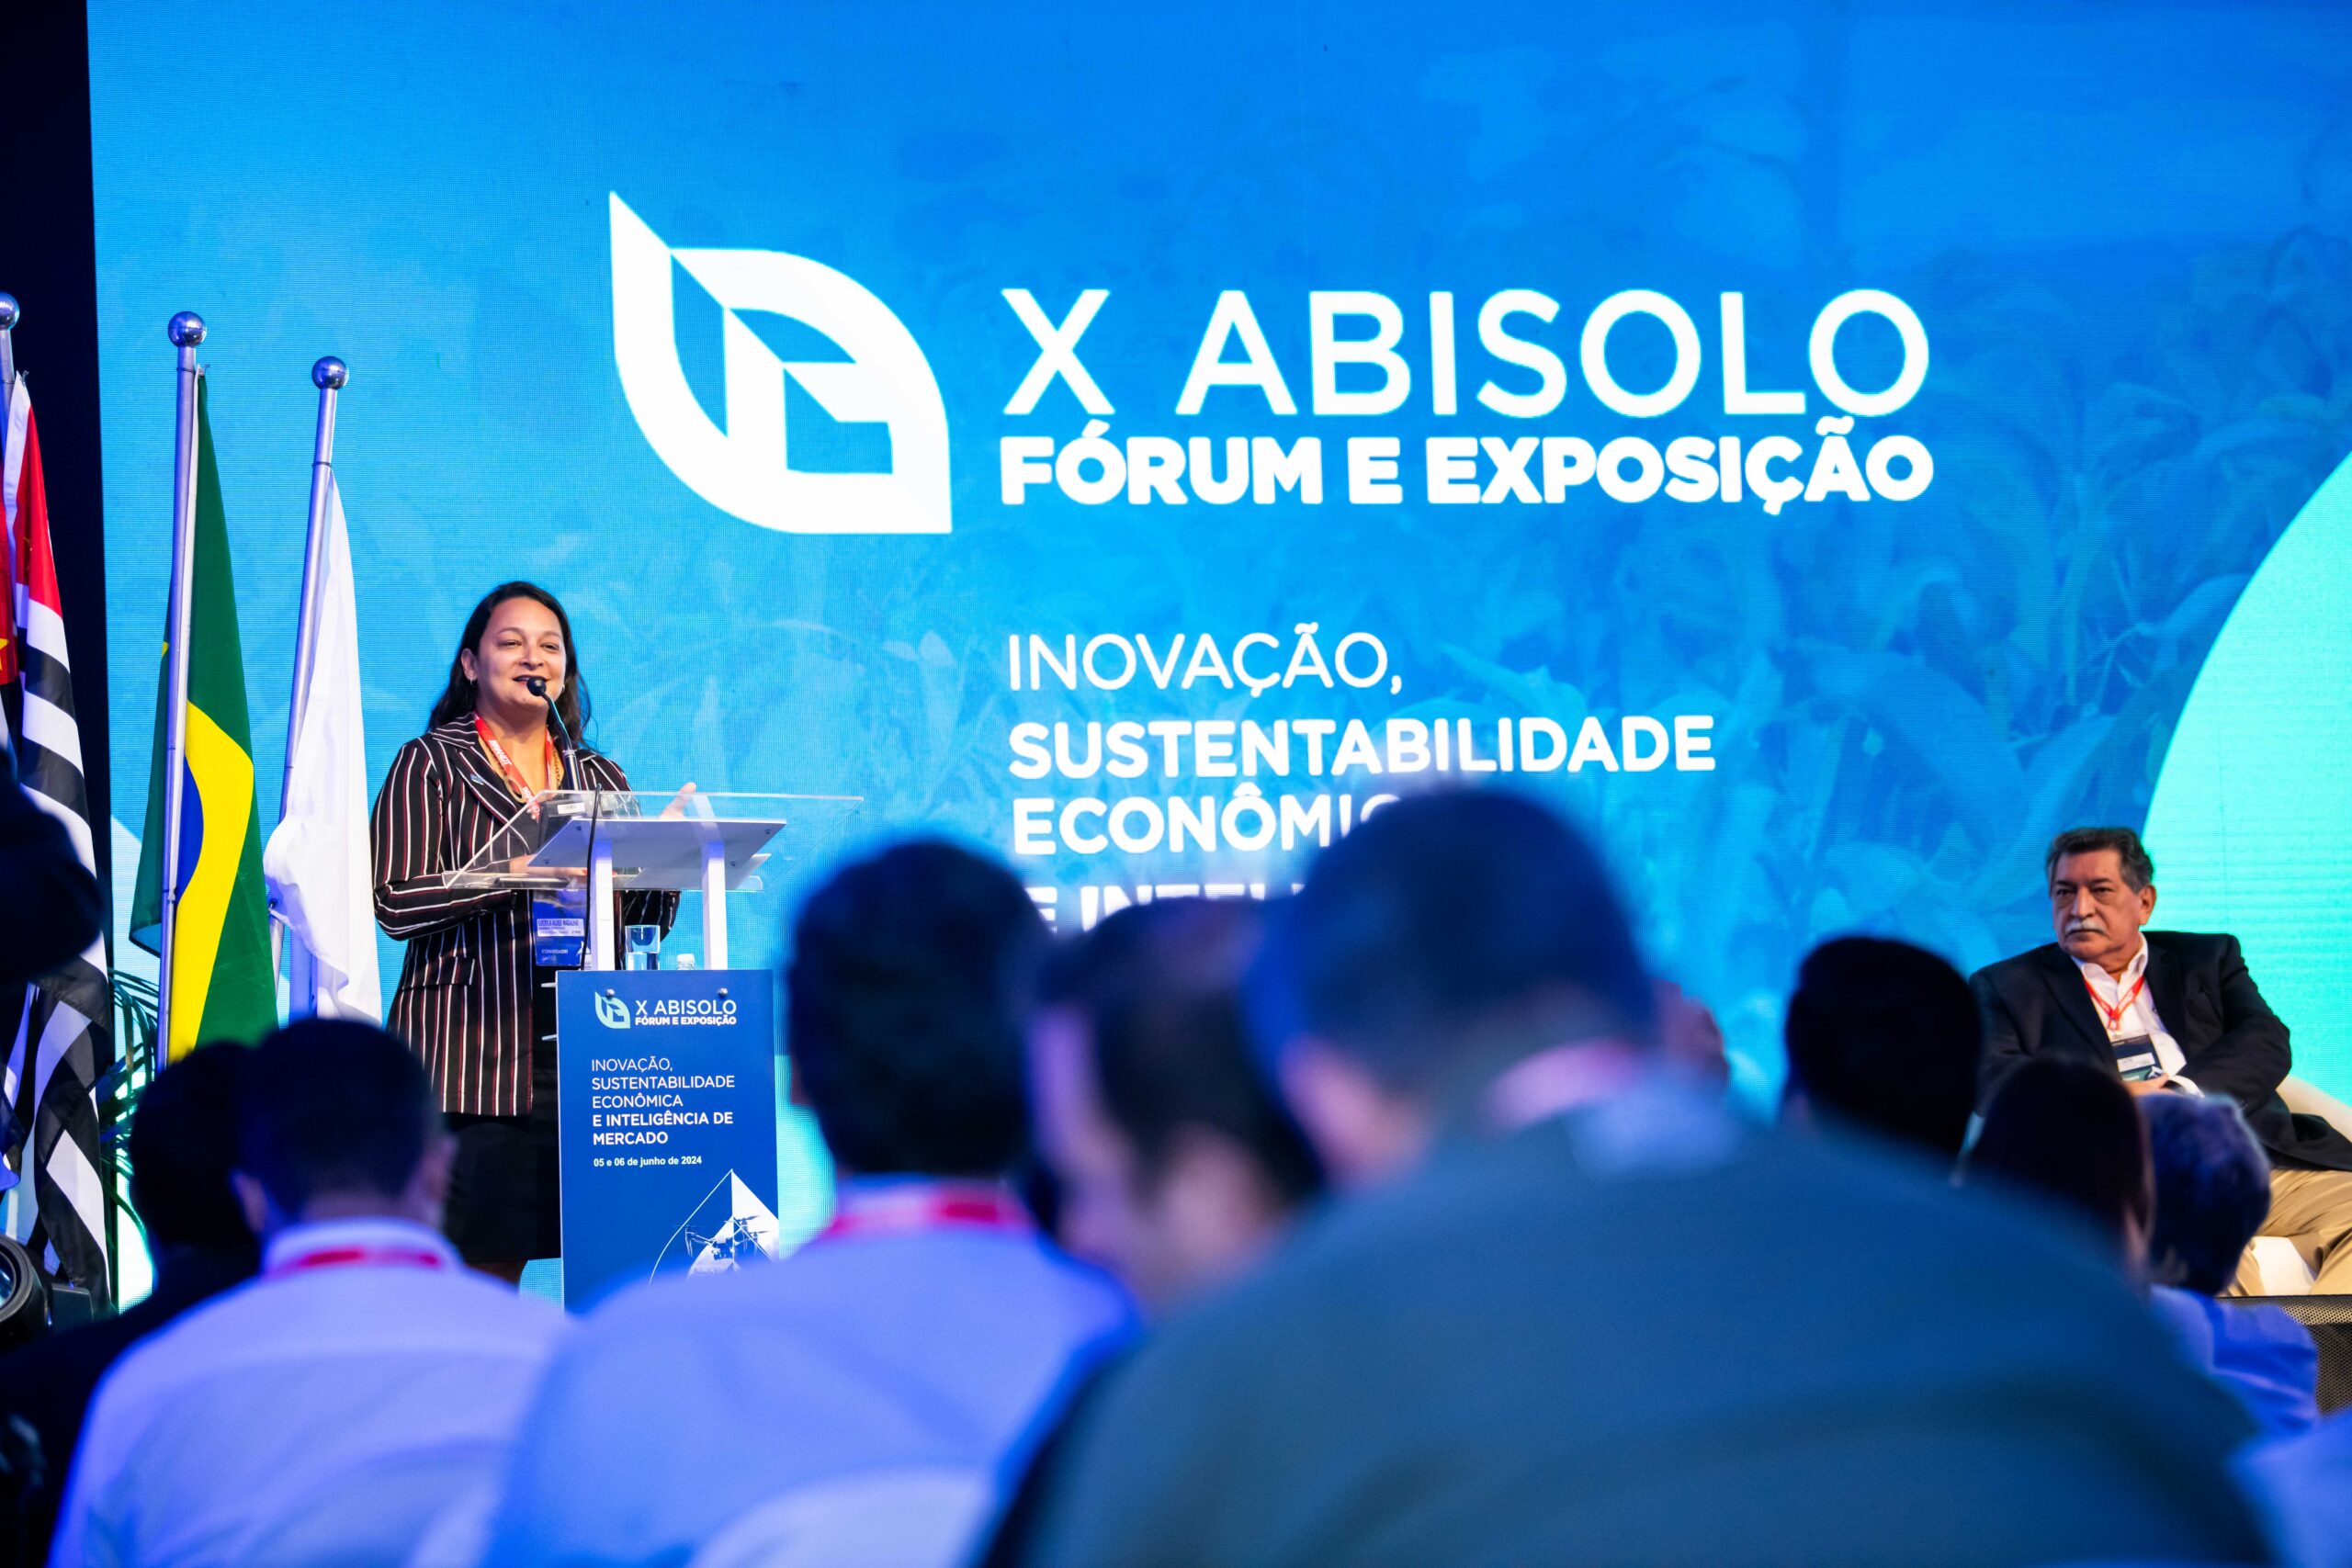 Fórum da Abisolo aborda temas como competividade e sustentabilidade econômica - Foto: Divulgação/Abisolo